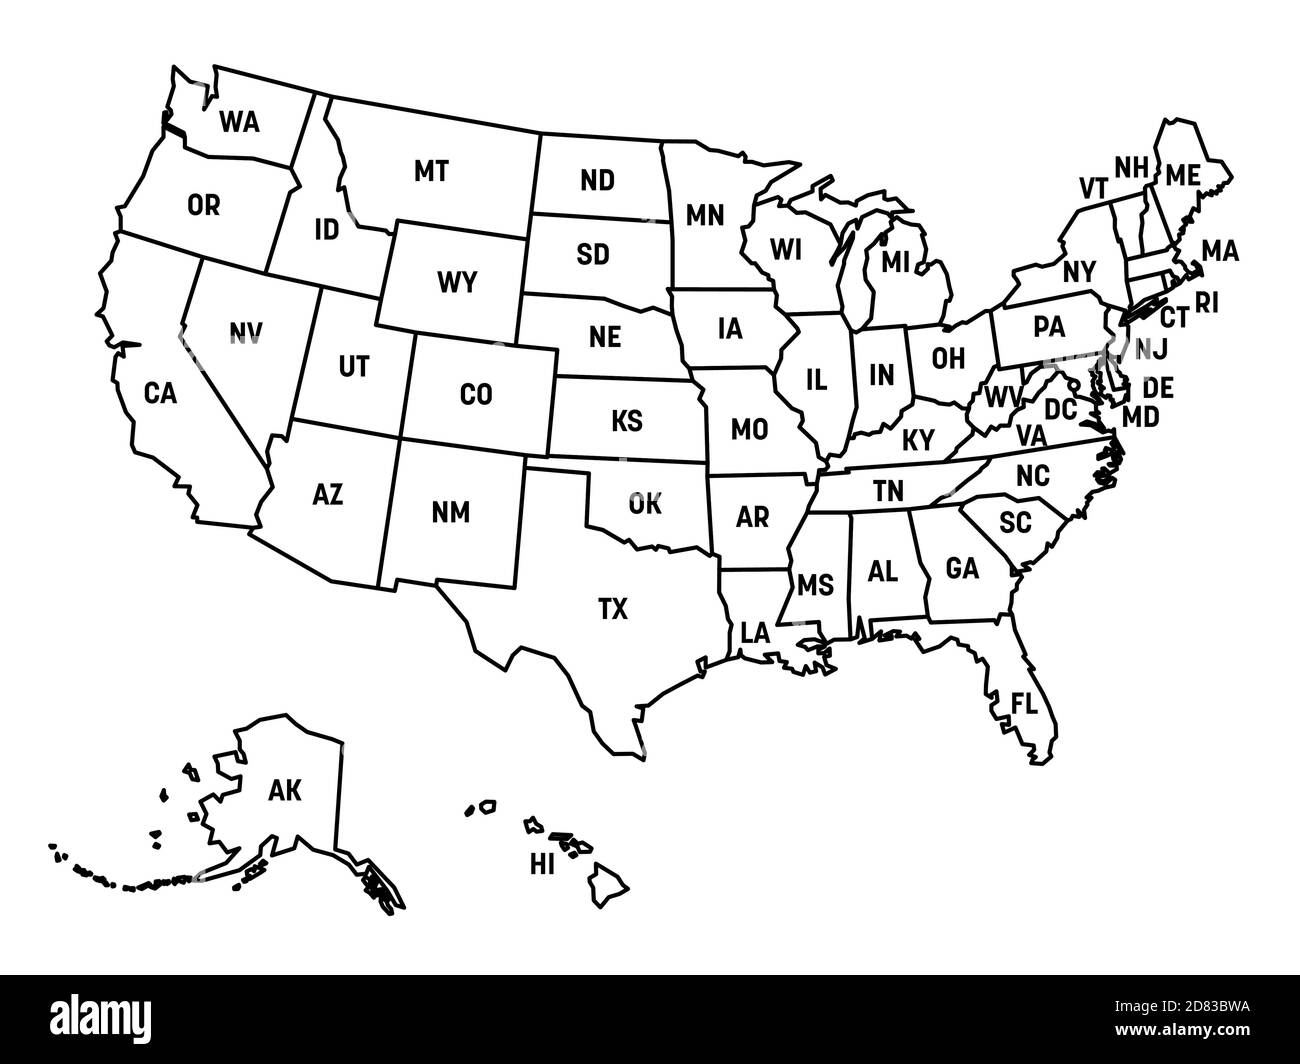 Mappa degli Stati Uniti d'America, USA, con abbreviazioni postali statali. Semplice mappa con contorno nero. Illustrazione Vettoriale